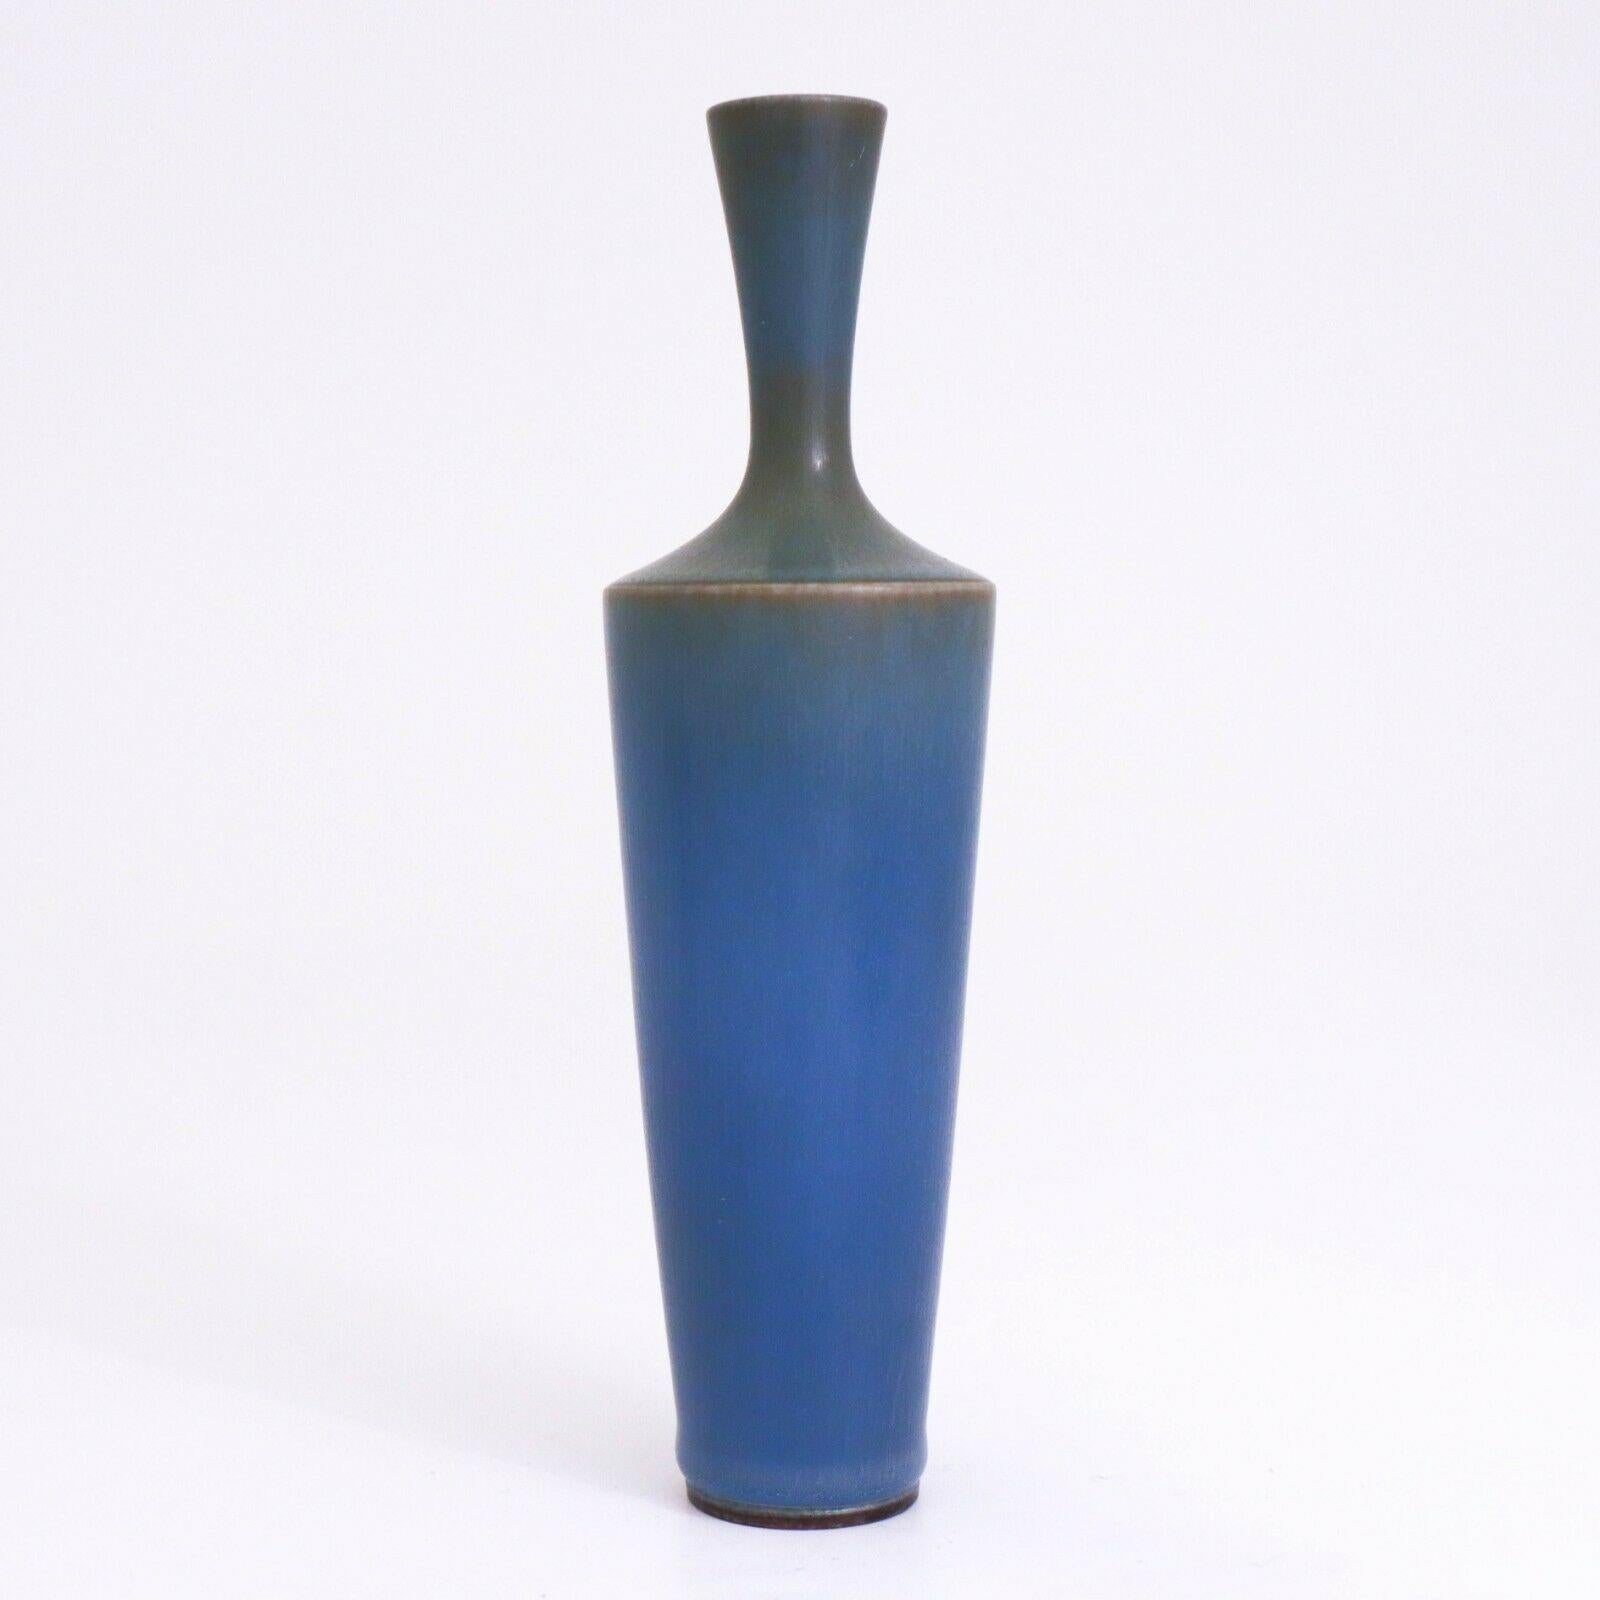 Un beau vase bleu conçu par Berndt Friberg à Gustavsberg à Stockholm, le vase est de 16,5 cm de haut avec un beau verre harfour. Il est marqué comme sur la photo et a été fabriqué en 1958. Elle est en excellent état.